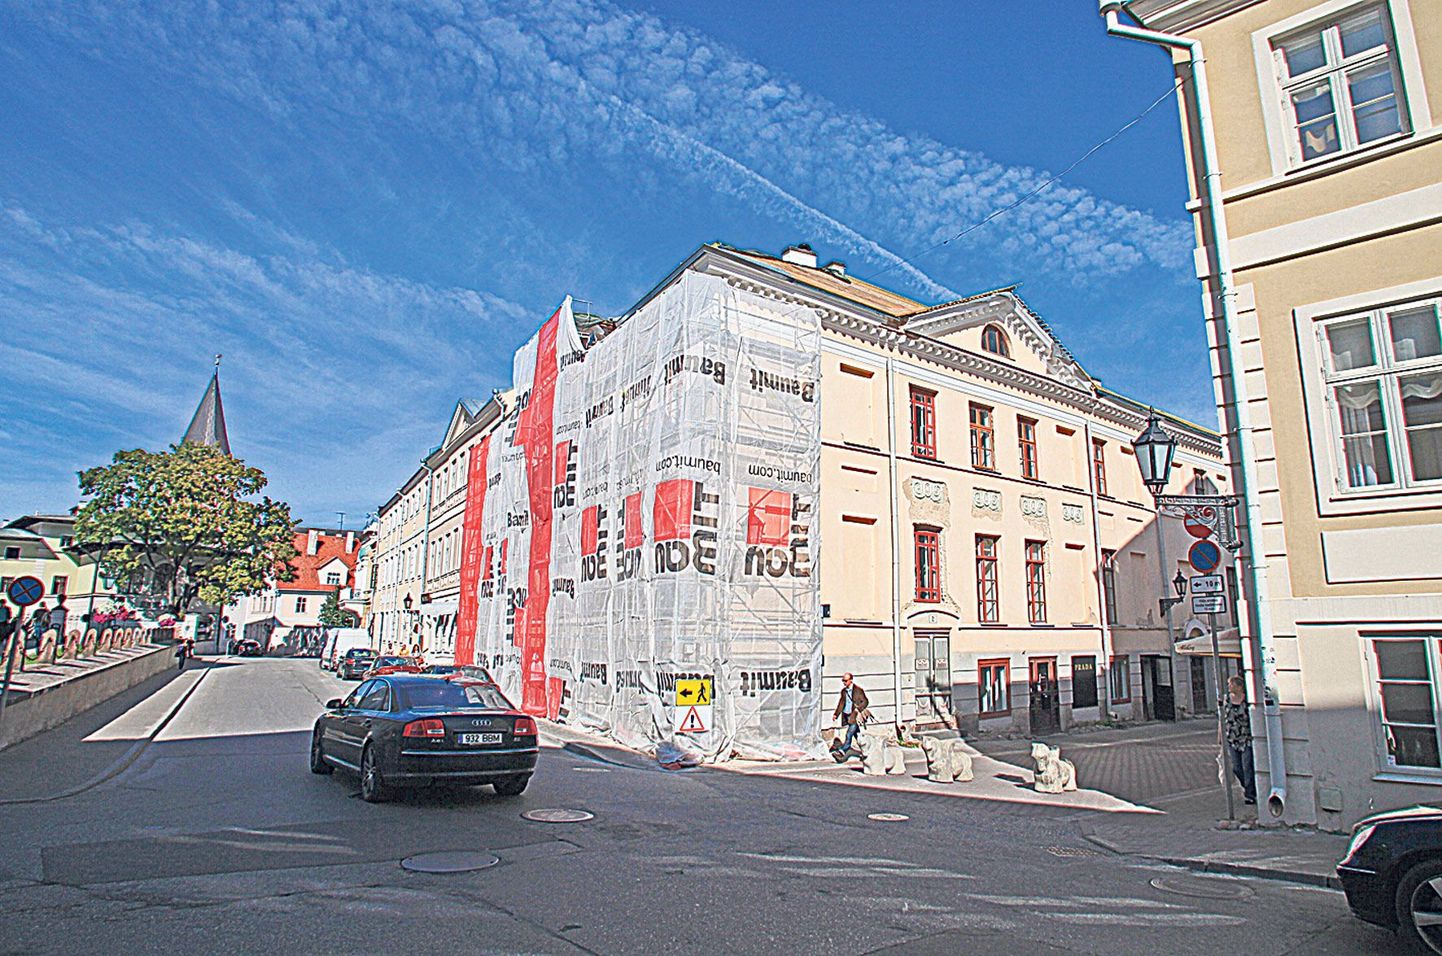 Tartu Ülikoolile kuulunud Küütri 2 hoone vahetas kevadel omanikku. Tulevikus saab majja osta kortereid, soklikorrusele jäävad äripinnad. Uus omanik on alustanud fassaadi remonti.